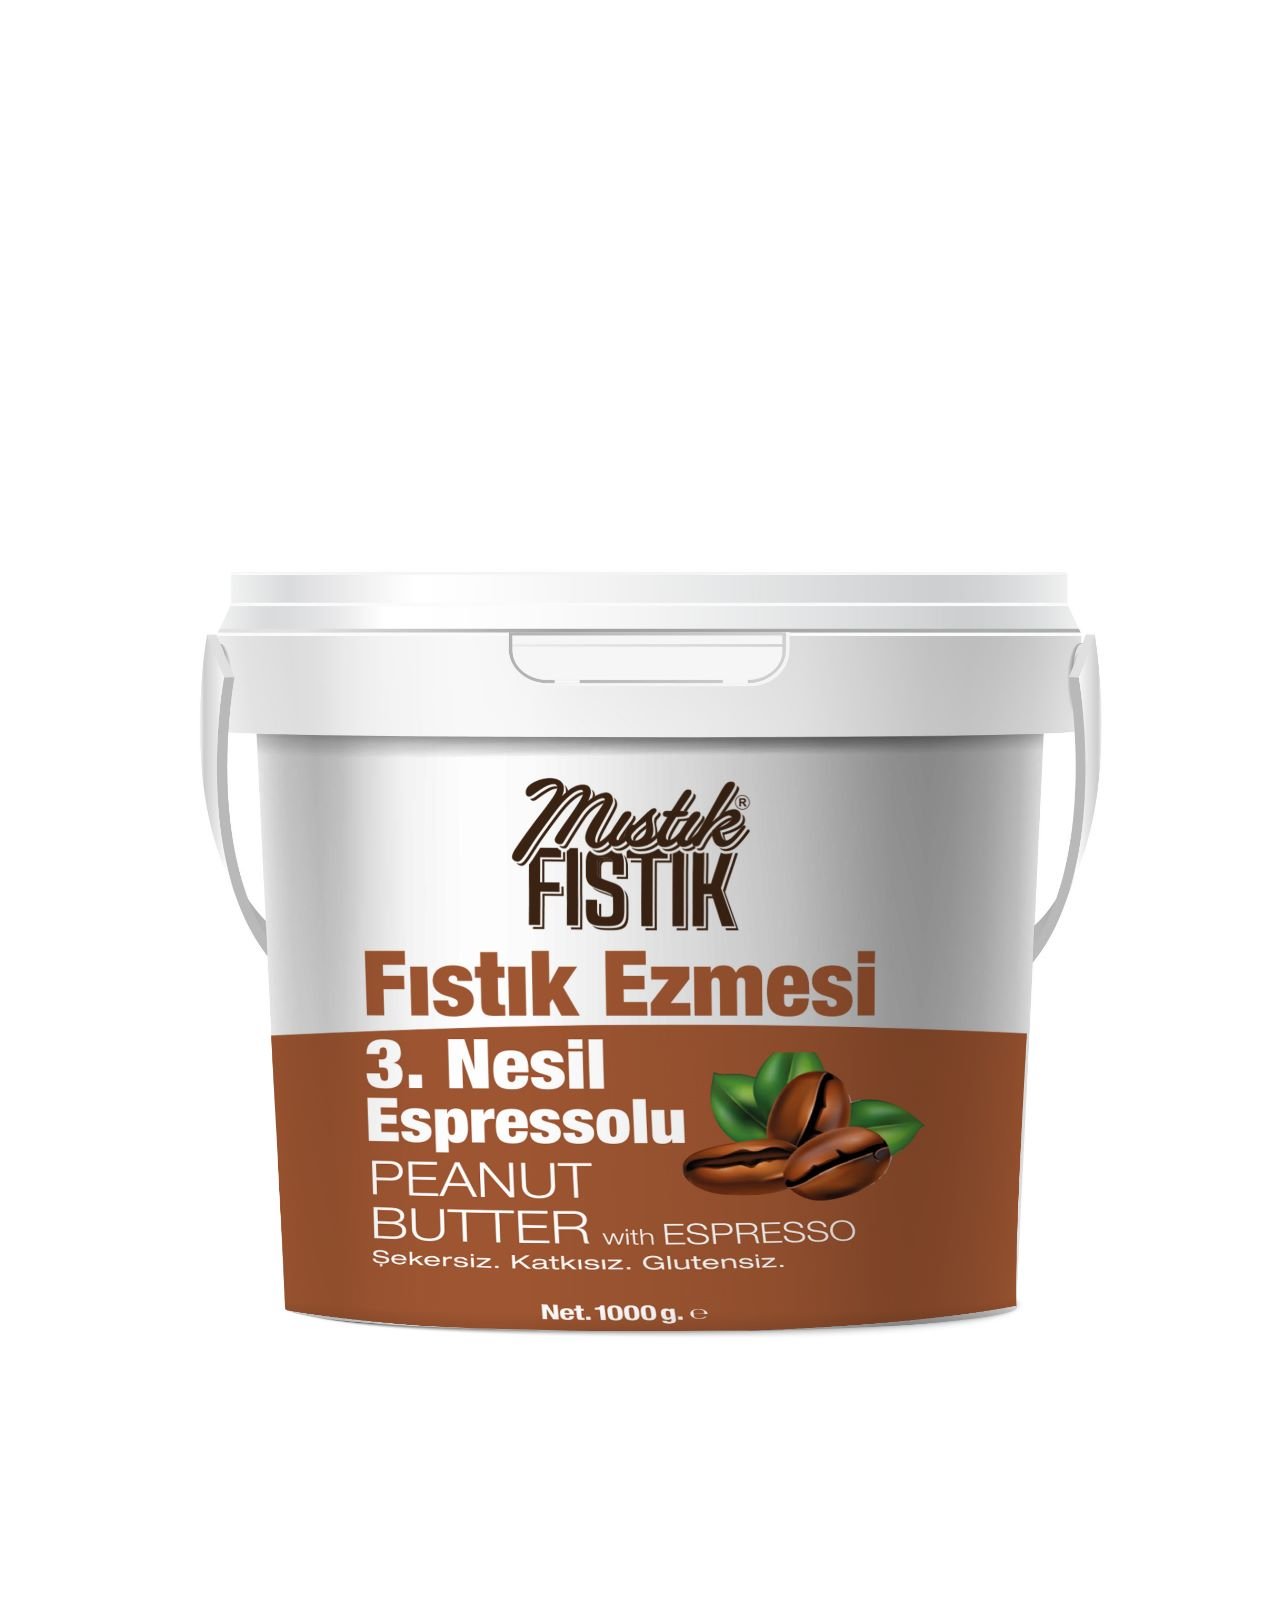 MF 3. Nesil Espressolu 1 Kg Fıstık Ezmesi (Şekersiz - Katkısız - Glutensiz)